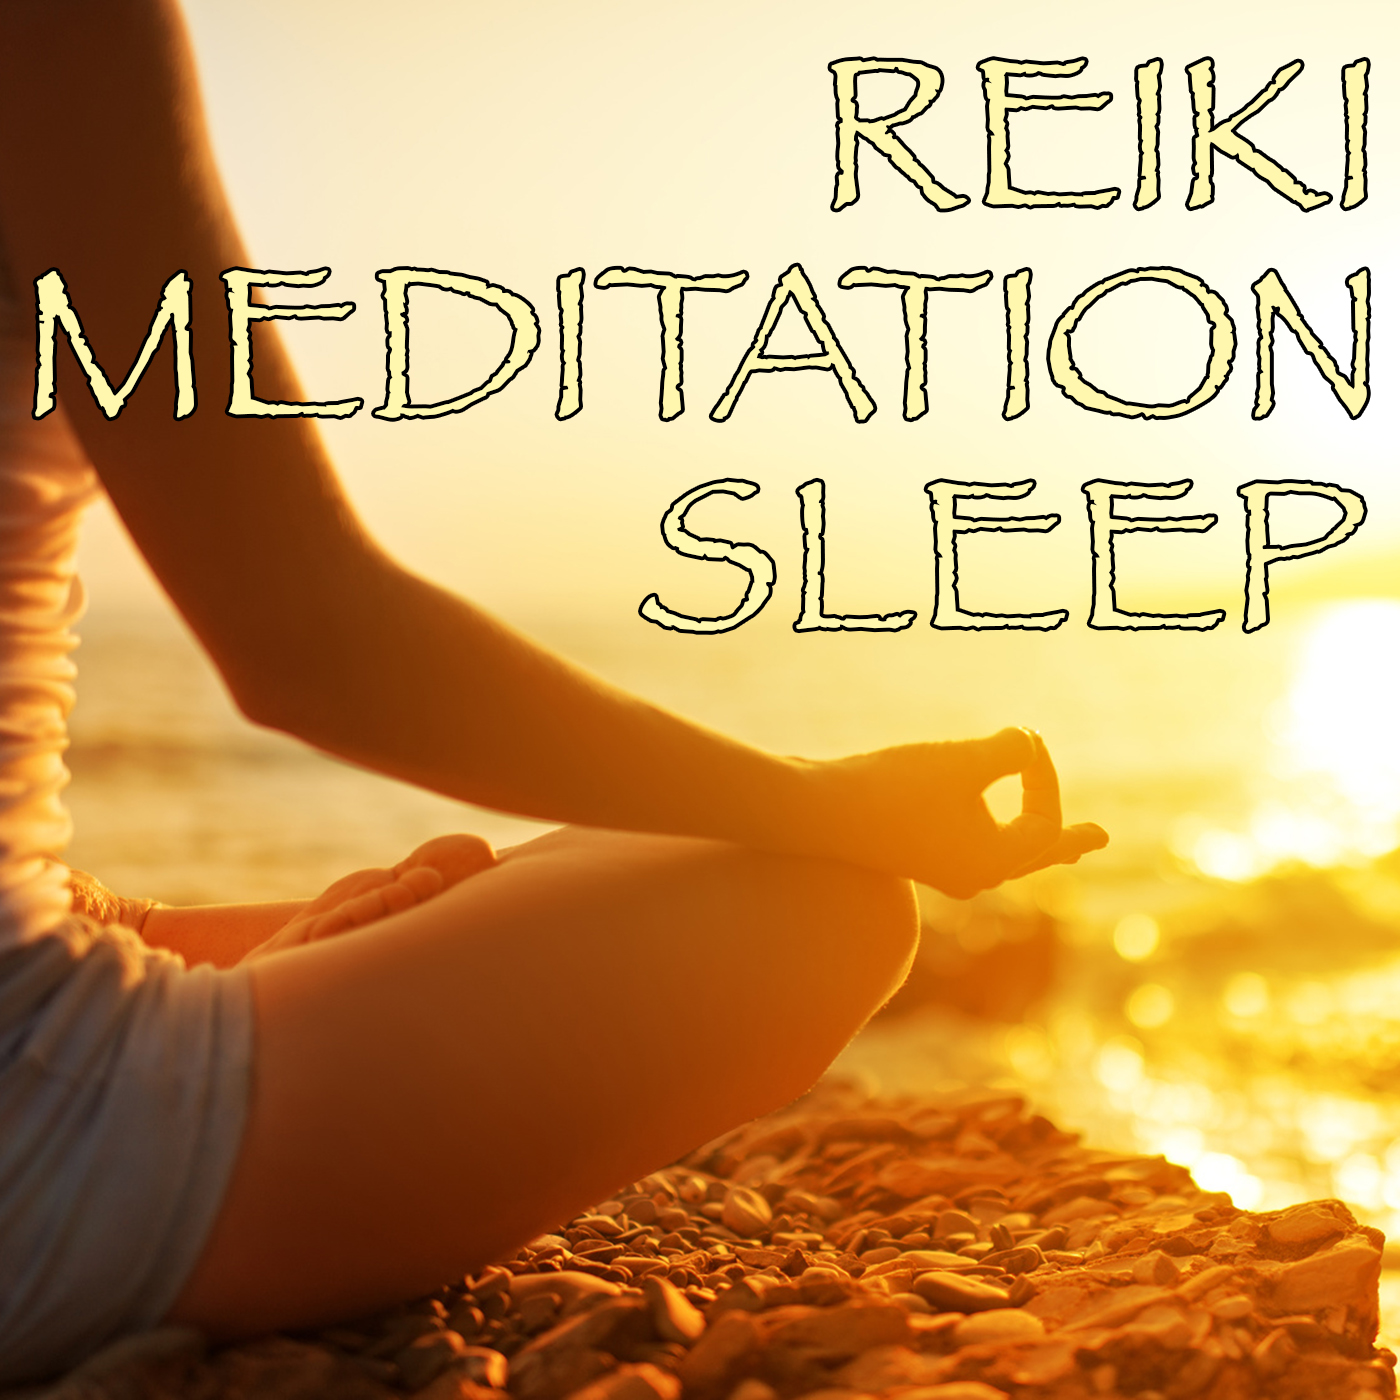 Reiki - Meditation Sleep